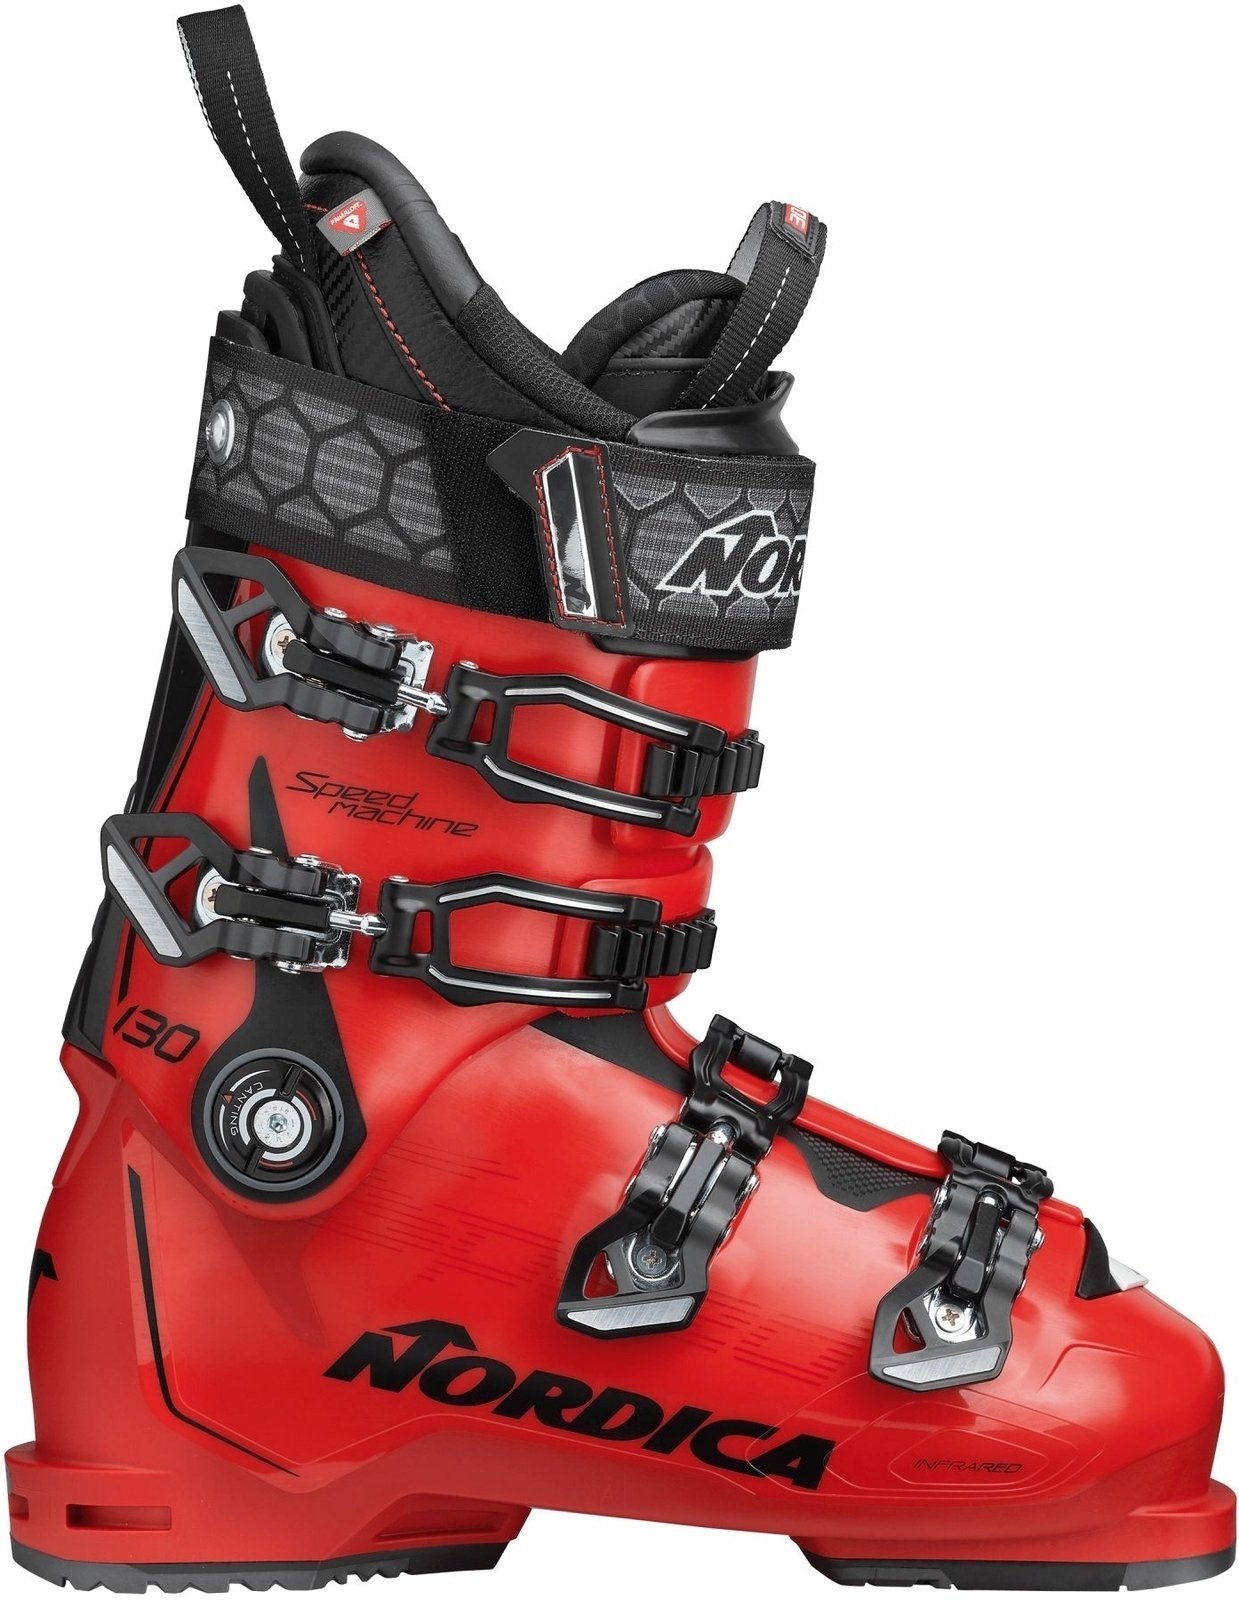 Alpina skidskor Nordica Speedmachine Red-Svart 290 Alpina skidskor